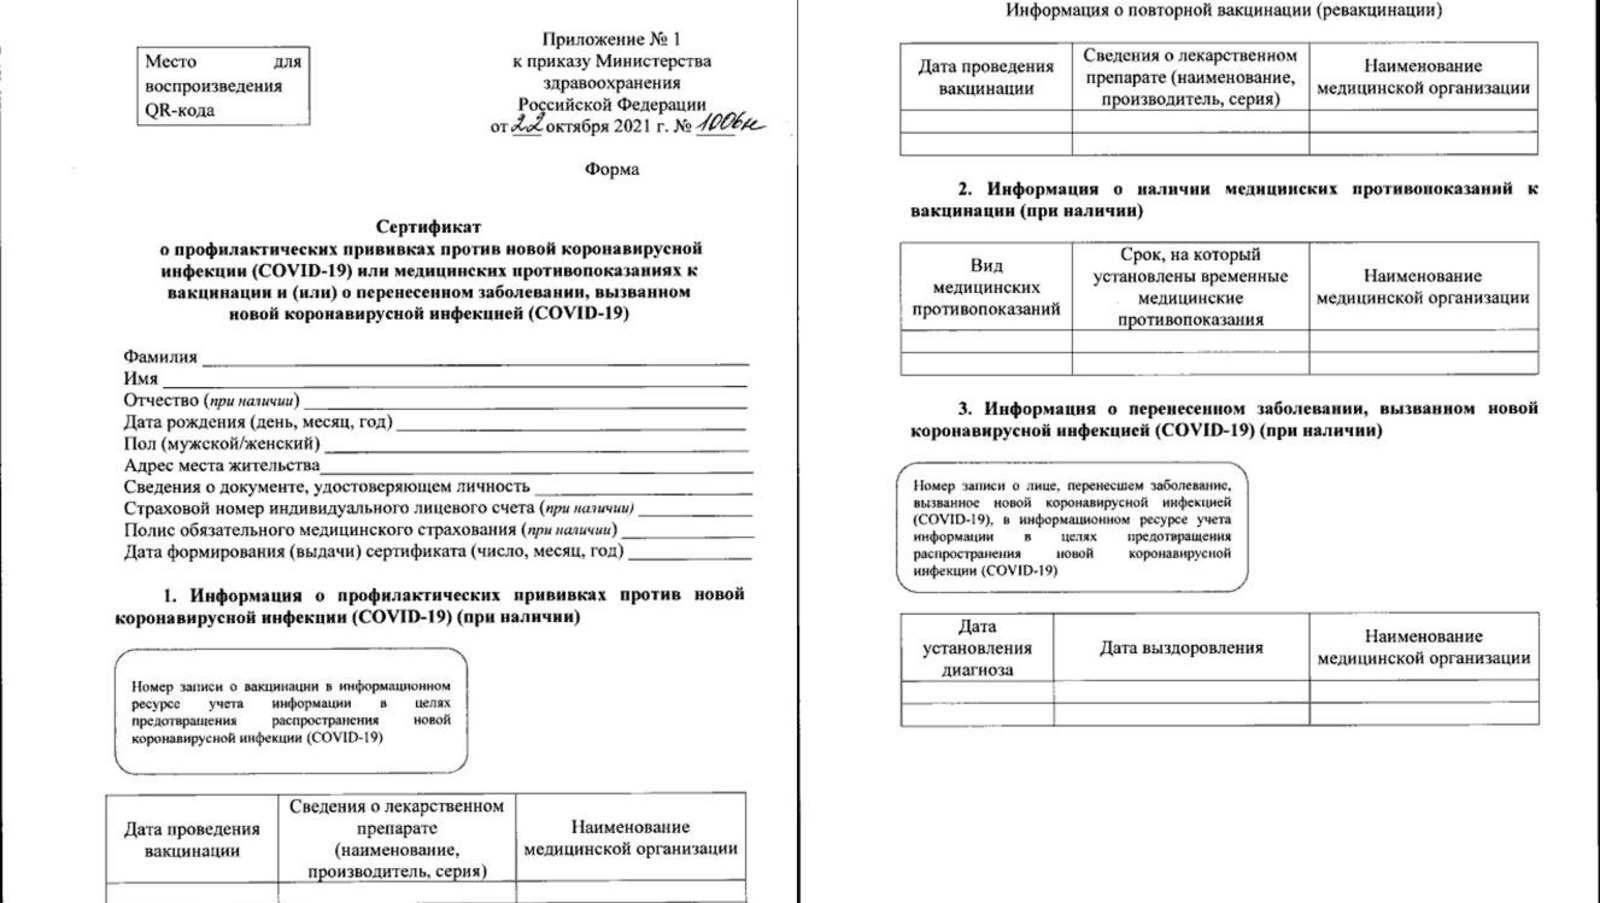 С 8 ноября, то есть с сегодняшнего дня, в России начнут выдавать новую форму сертификата о вакцинации